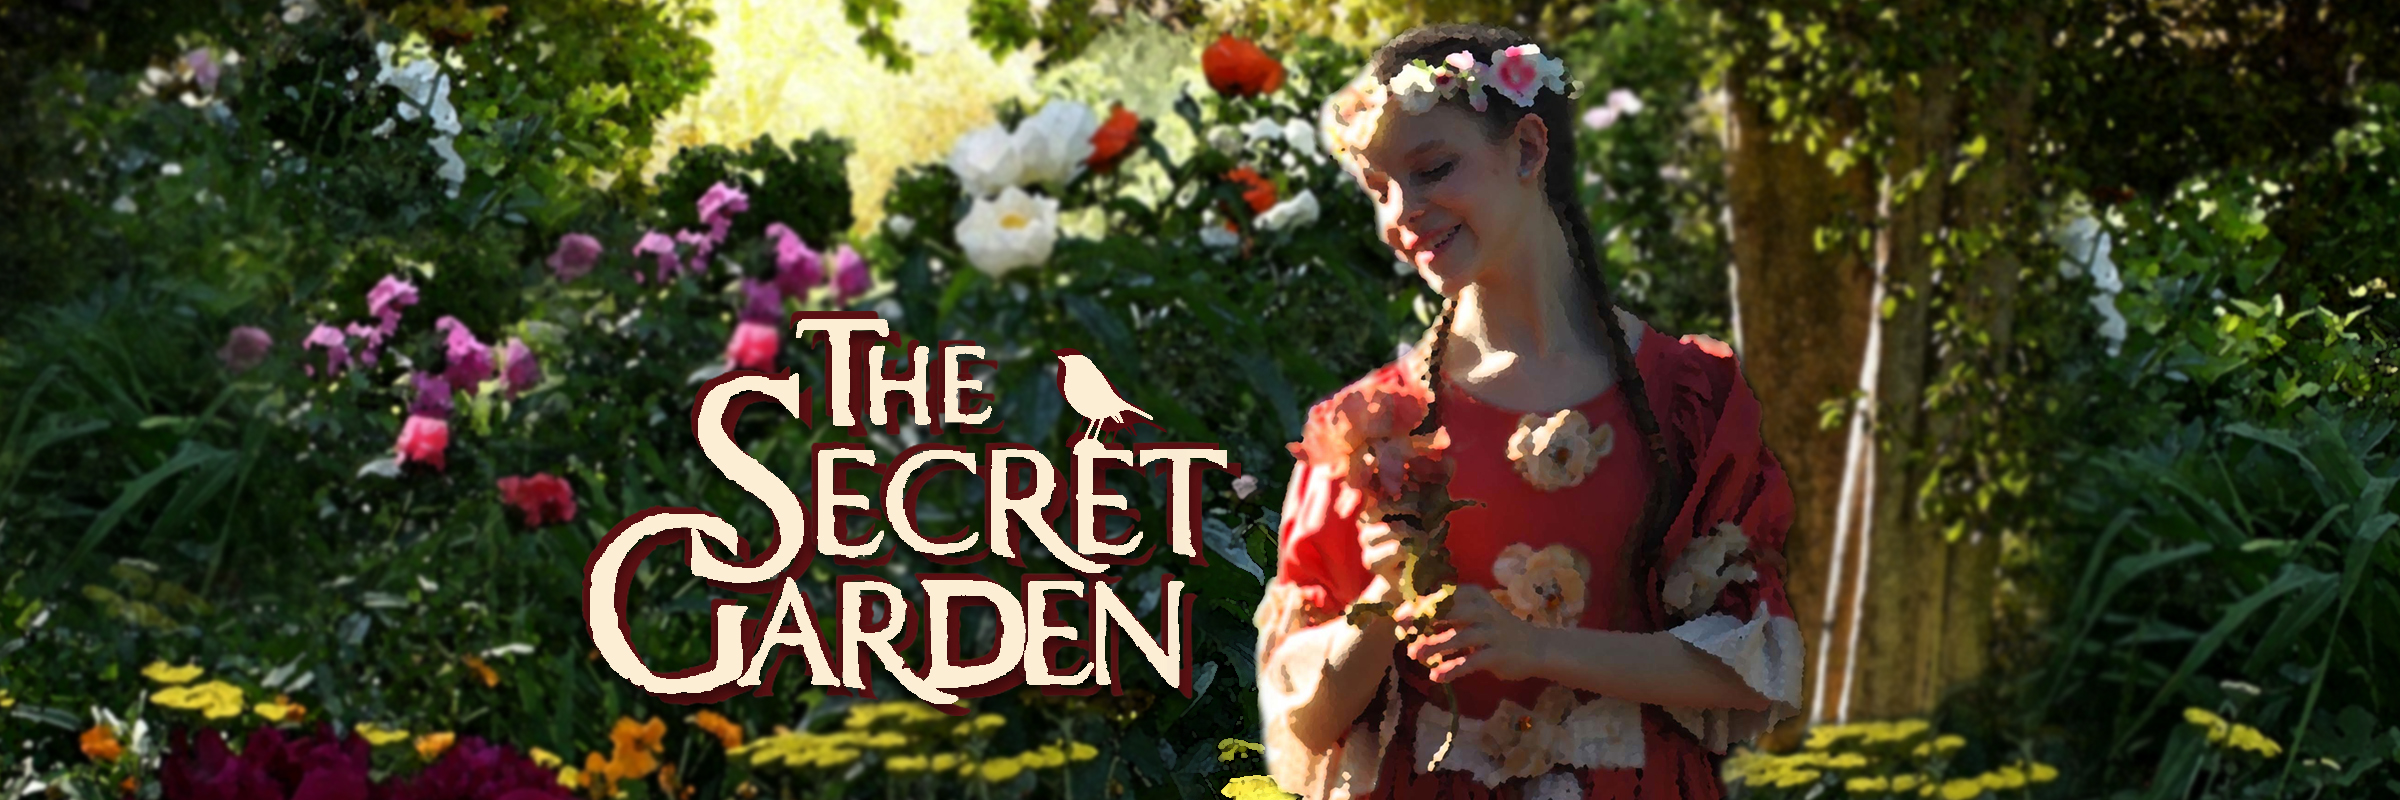 POSTPONED: The Secret Garden